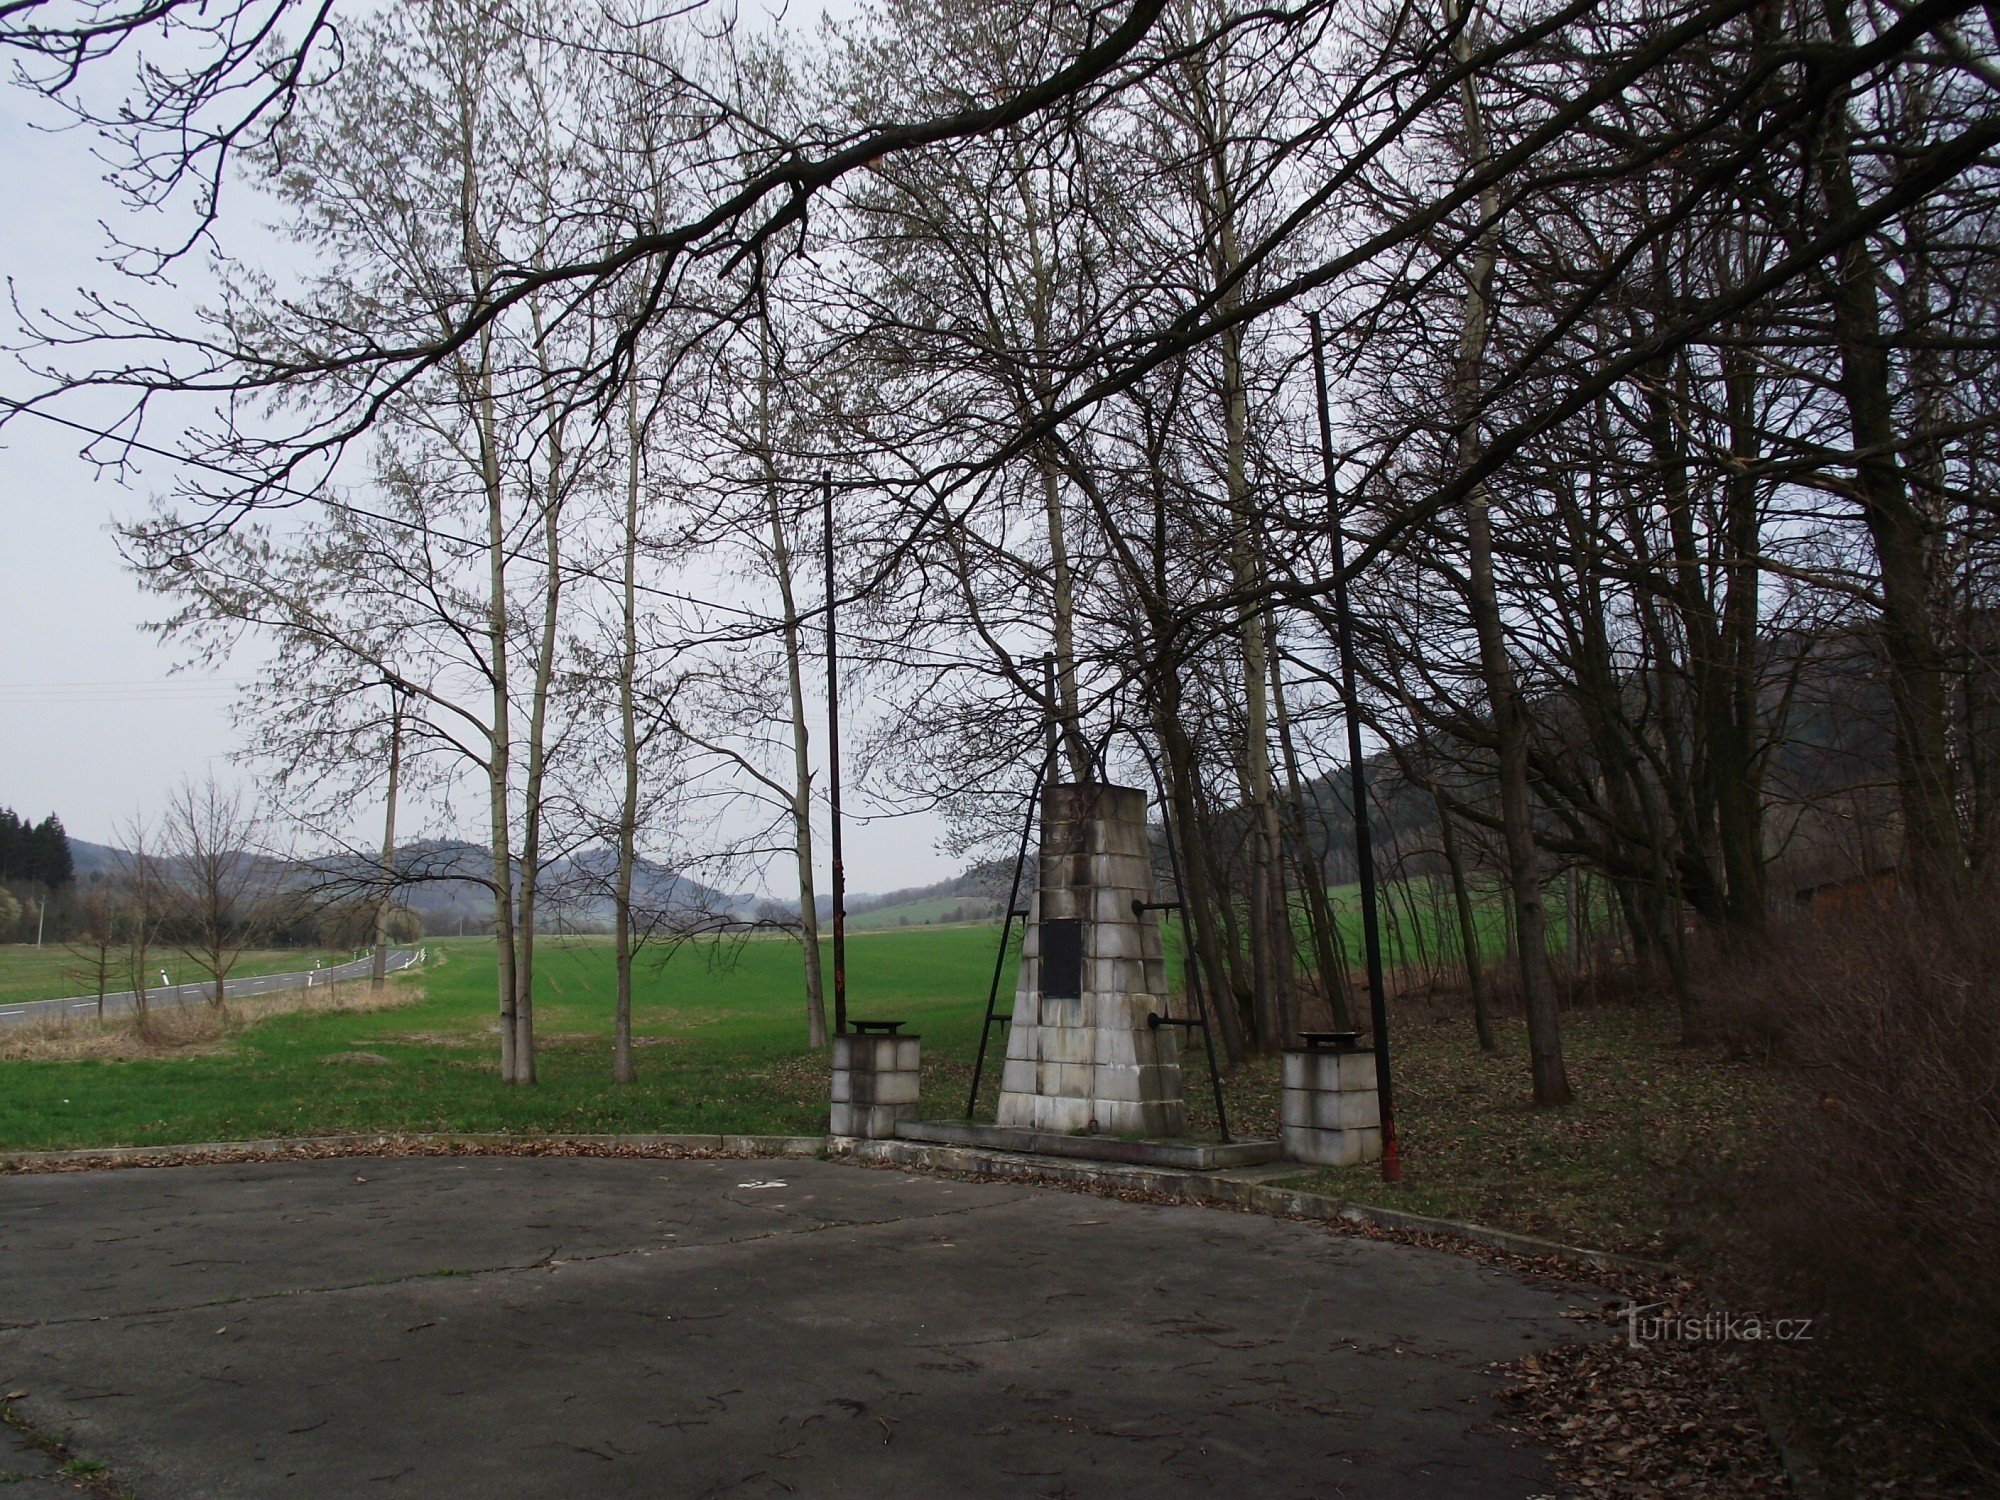 ブラトルショフ – 第二次世界大戦の犠牲者の記念碑。 ブラトルショフスク射撃場での第二次世界大戦